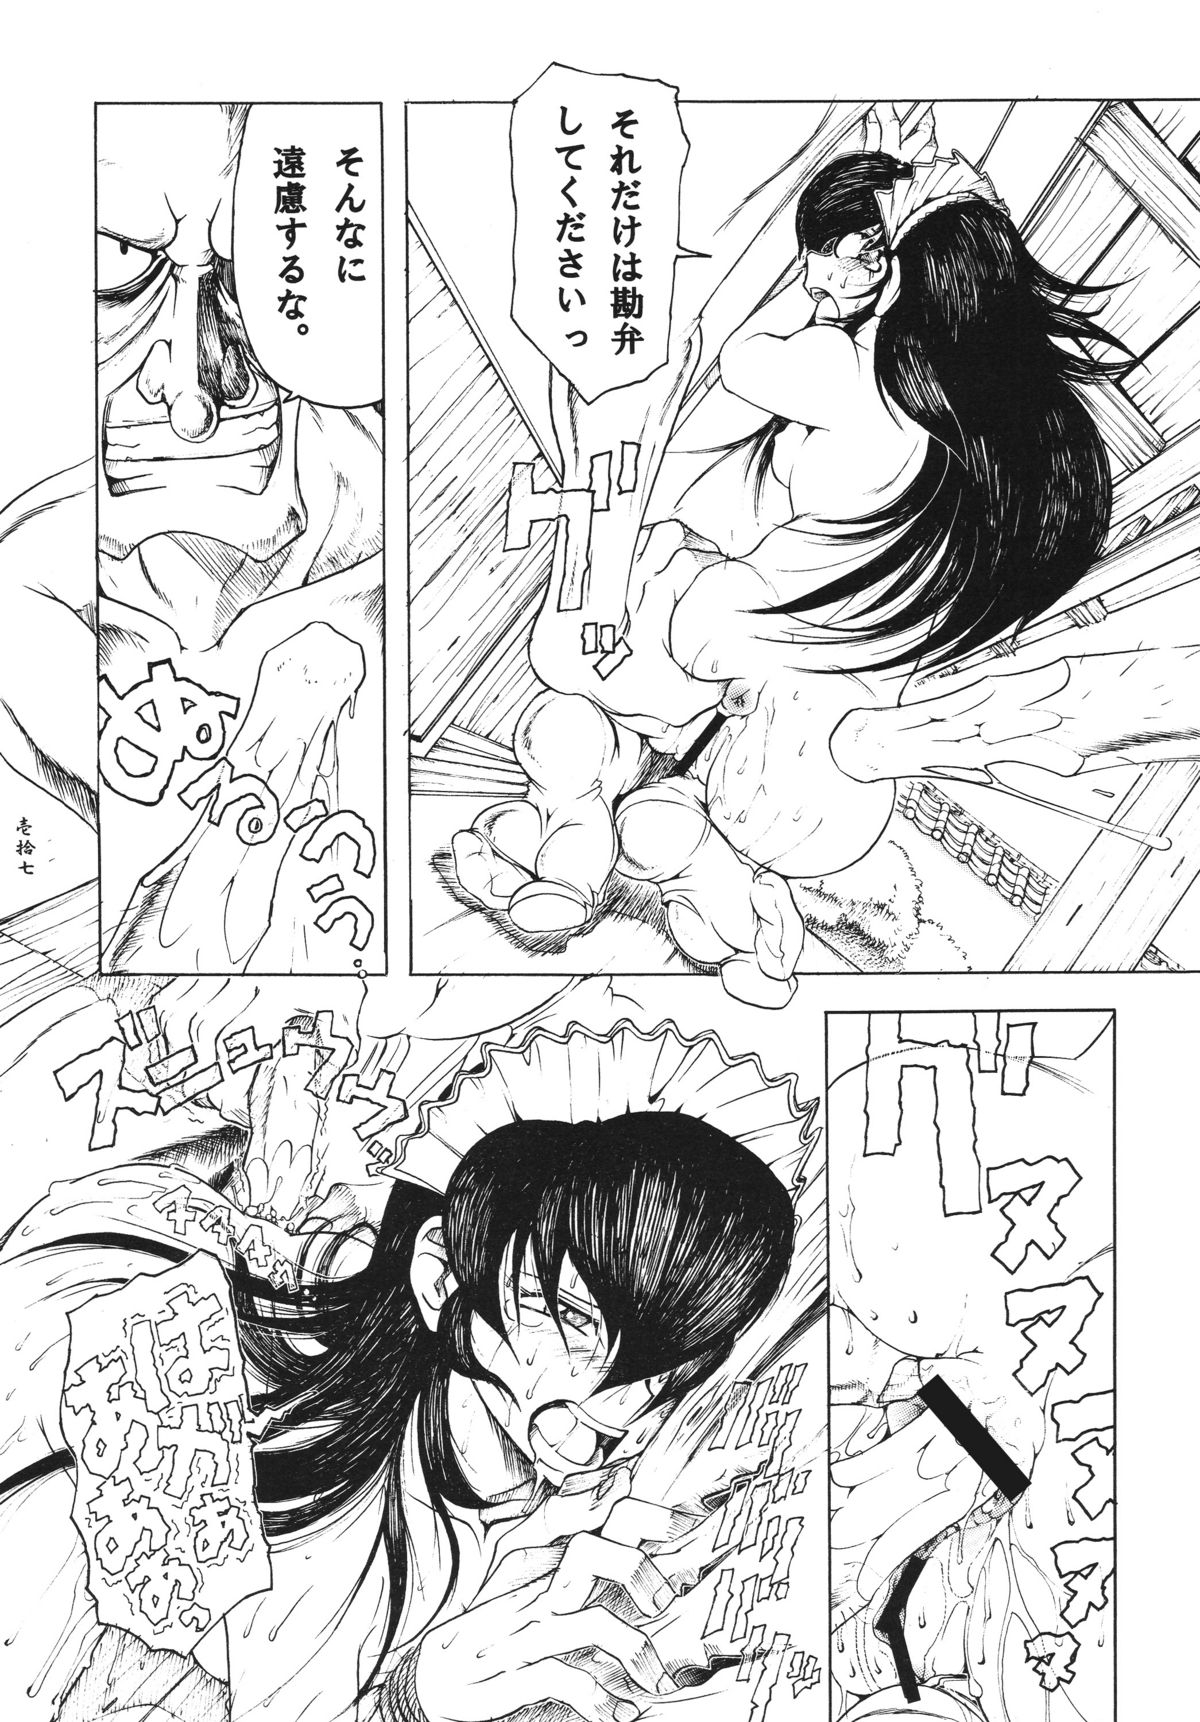 [Sumire Club] Tsuki no hikari ni teru kami iken -Gesshoku warireisai- (同人誌) [スミレ倶楽部] 月の光に照る髪異聞 月蝕割例祭